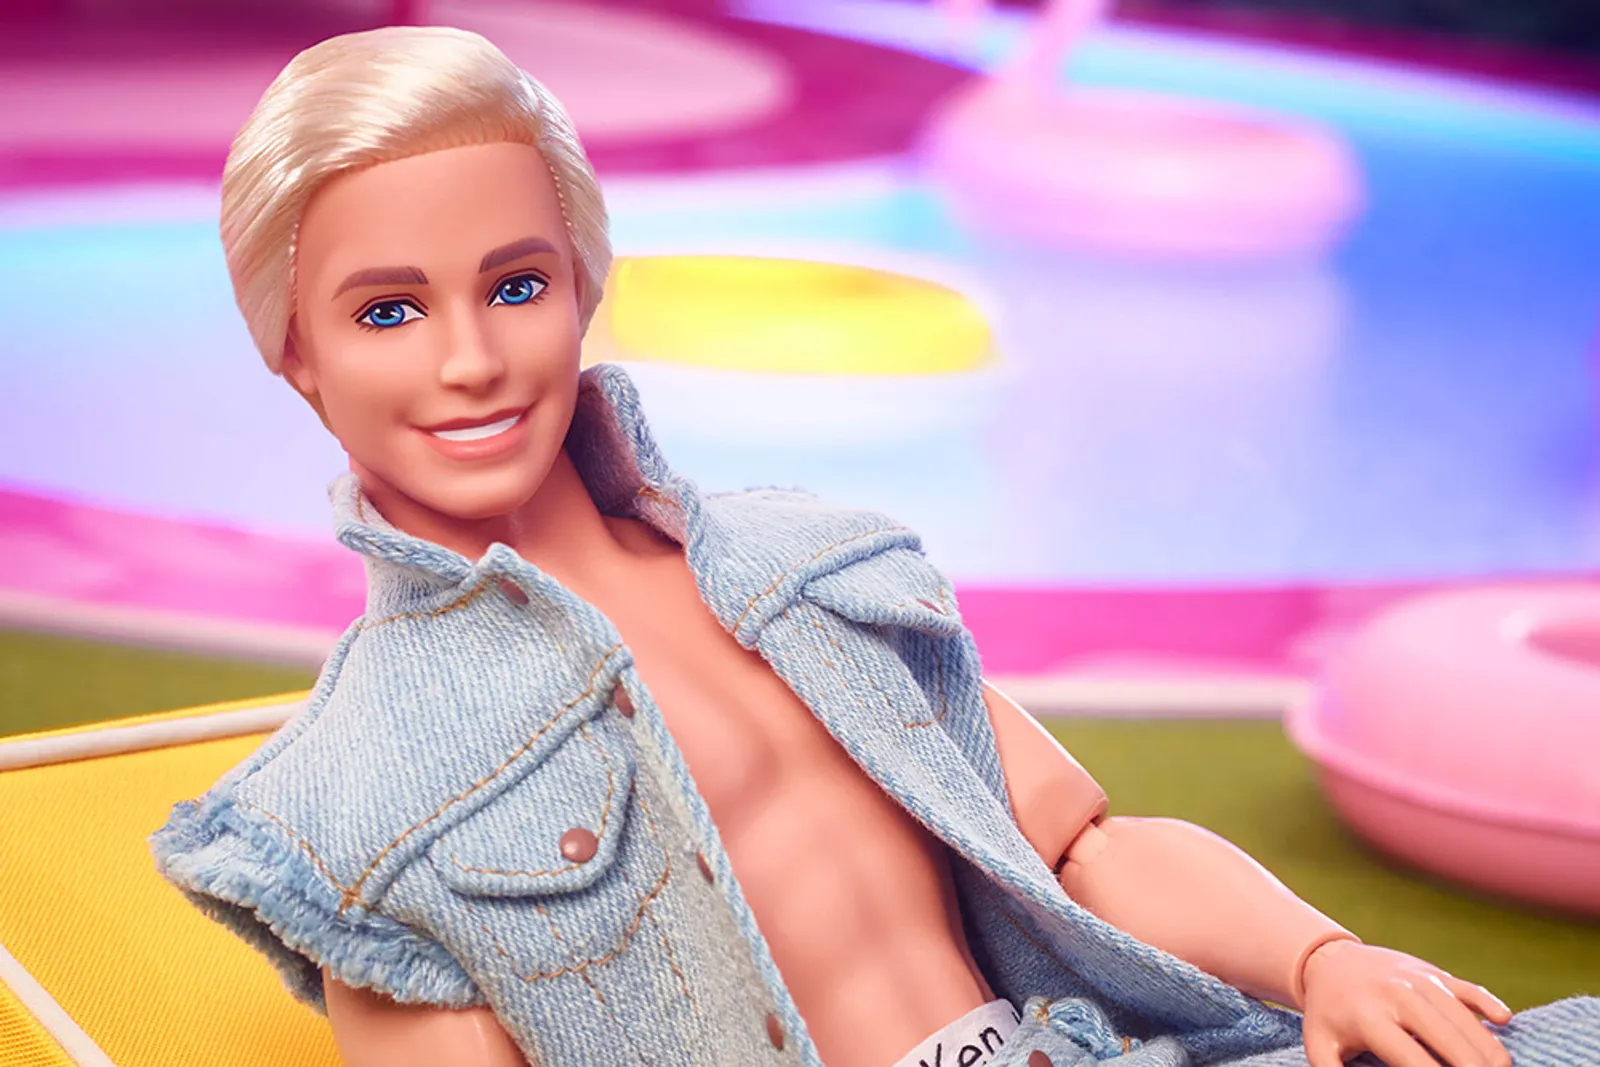 Secara Astrologi, Benarkah Barbie dan Ken Adalah Pasangan Serasi?